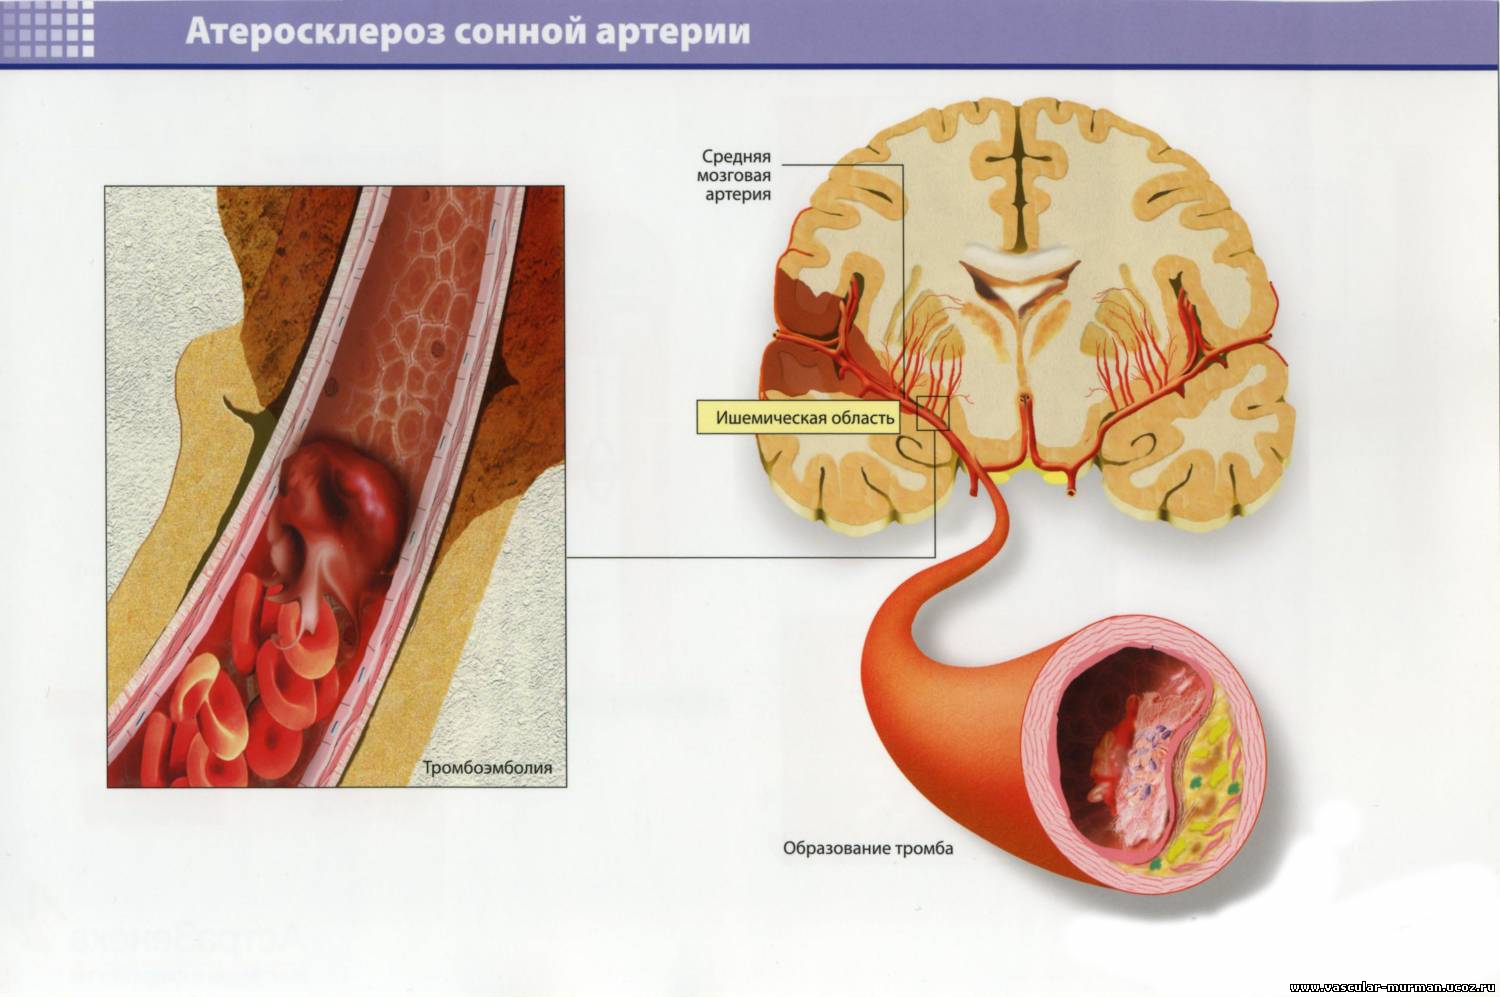 Атеросклероз церебральных сосудов симптомы. Церебральный атеросклероз сонной артерии. Патогенез атеросклероза сонной артерии. Атеросклеротические бляшки в сосудах головного мозга.